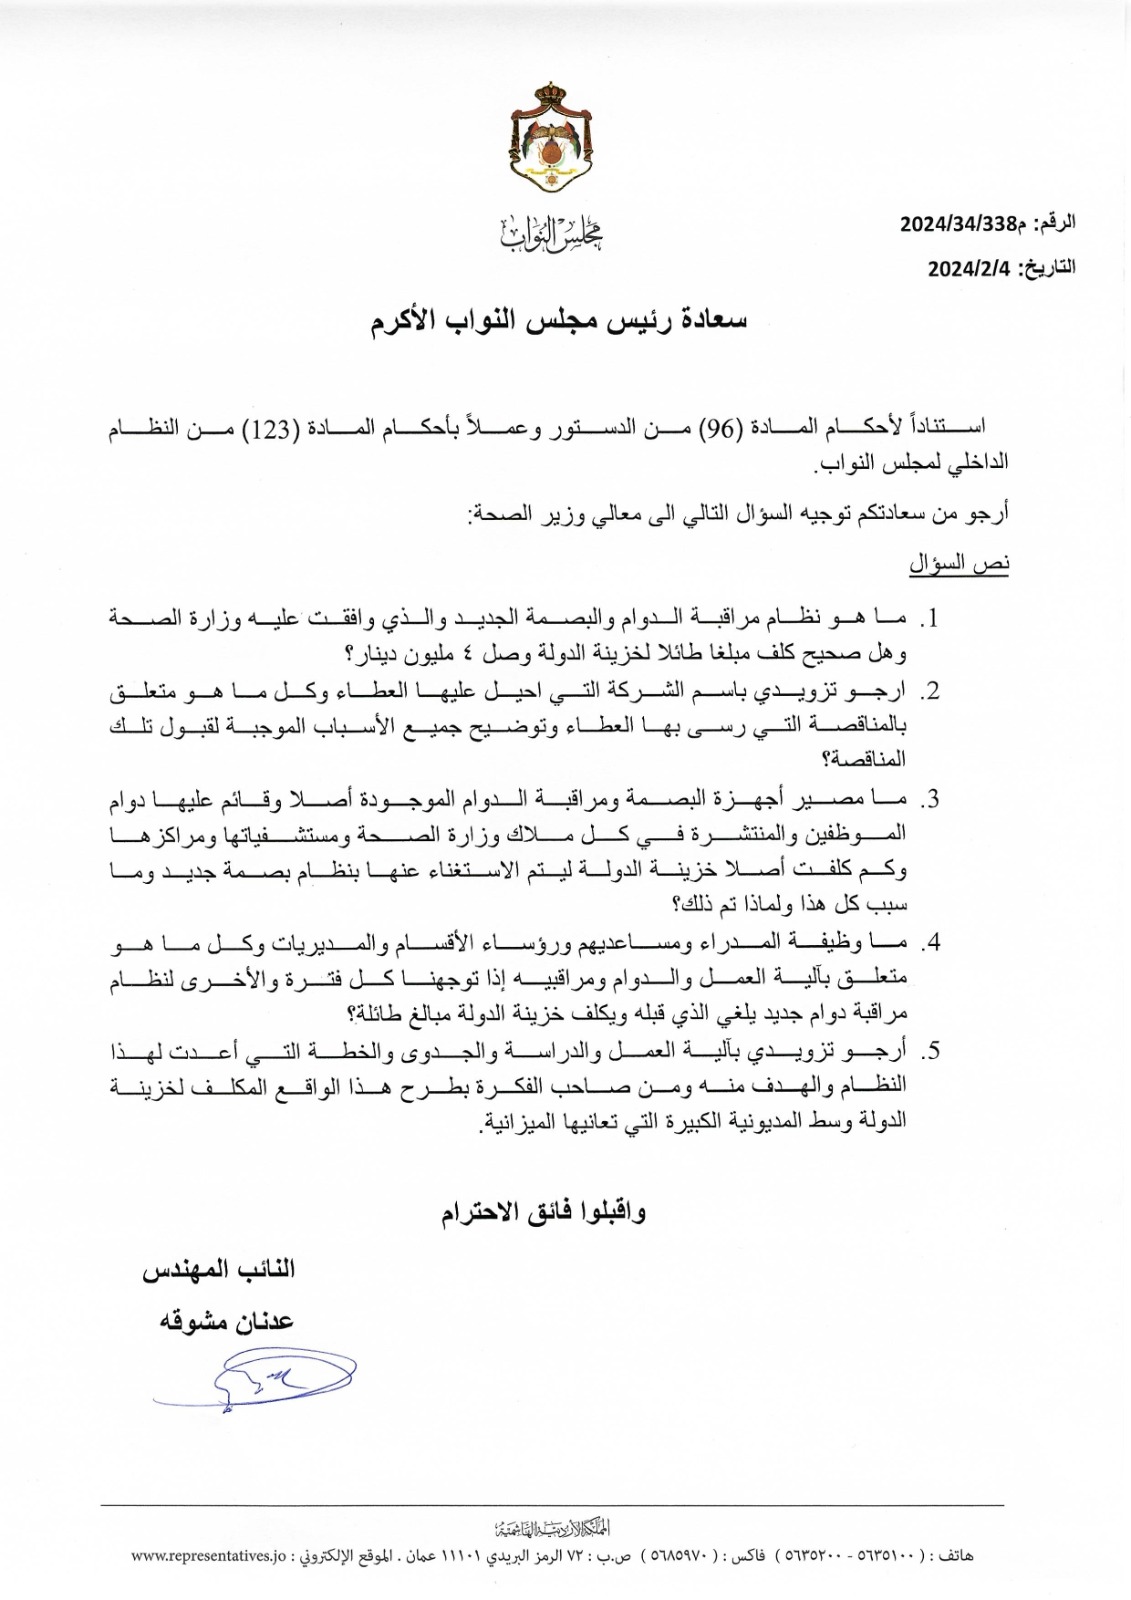 النائب عدنان مشوقة يُسائل وزير الصحة حول نظام مراقبة الدوام البصمة الجديد وتكلفته على الوزارة 